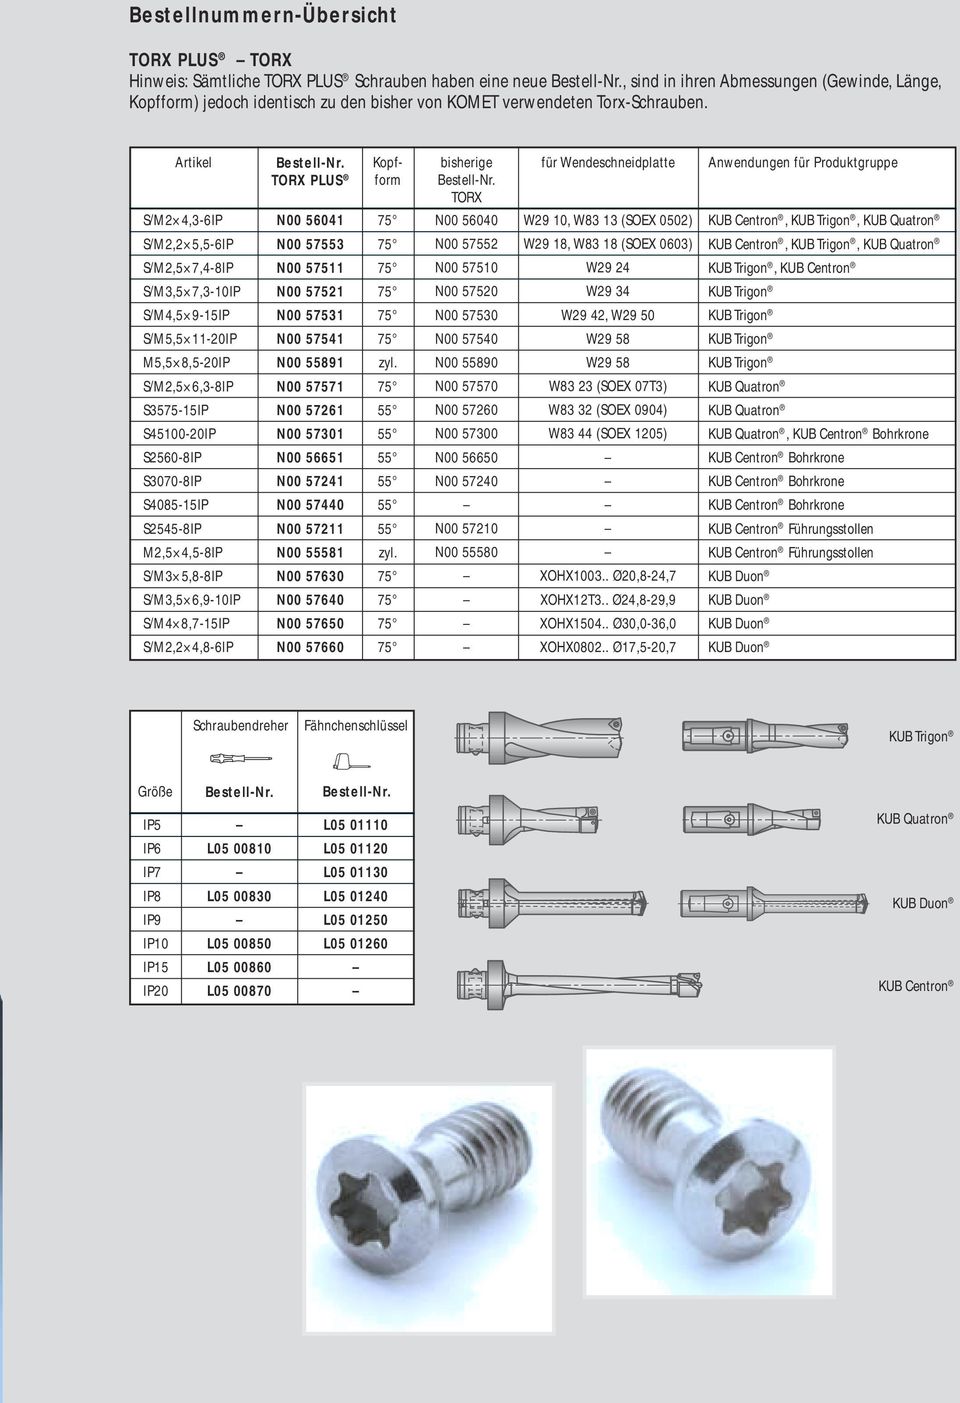 S/M2 4,3-6IP TORX PLUS N00 56041 Kopfform bisherige TORX N00 56040 für Wendeschneidplatte W29 10, W83 13 (SOEX 0502) Anwendungen für Produktgruppe KUB Centron,, KUB Quatron S/M2,2 5,5-6IP S/M2,5